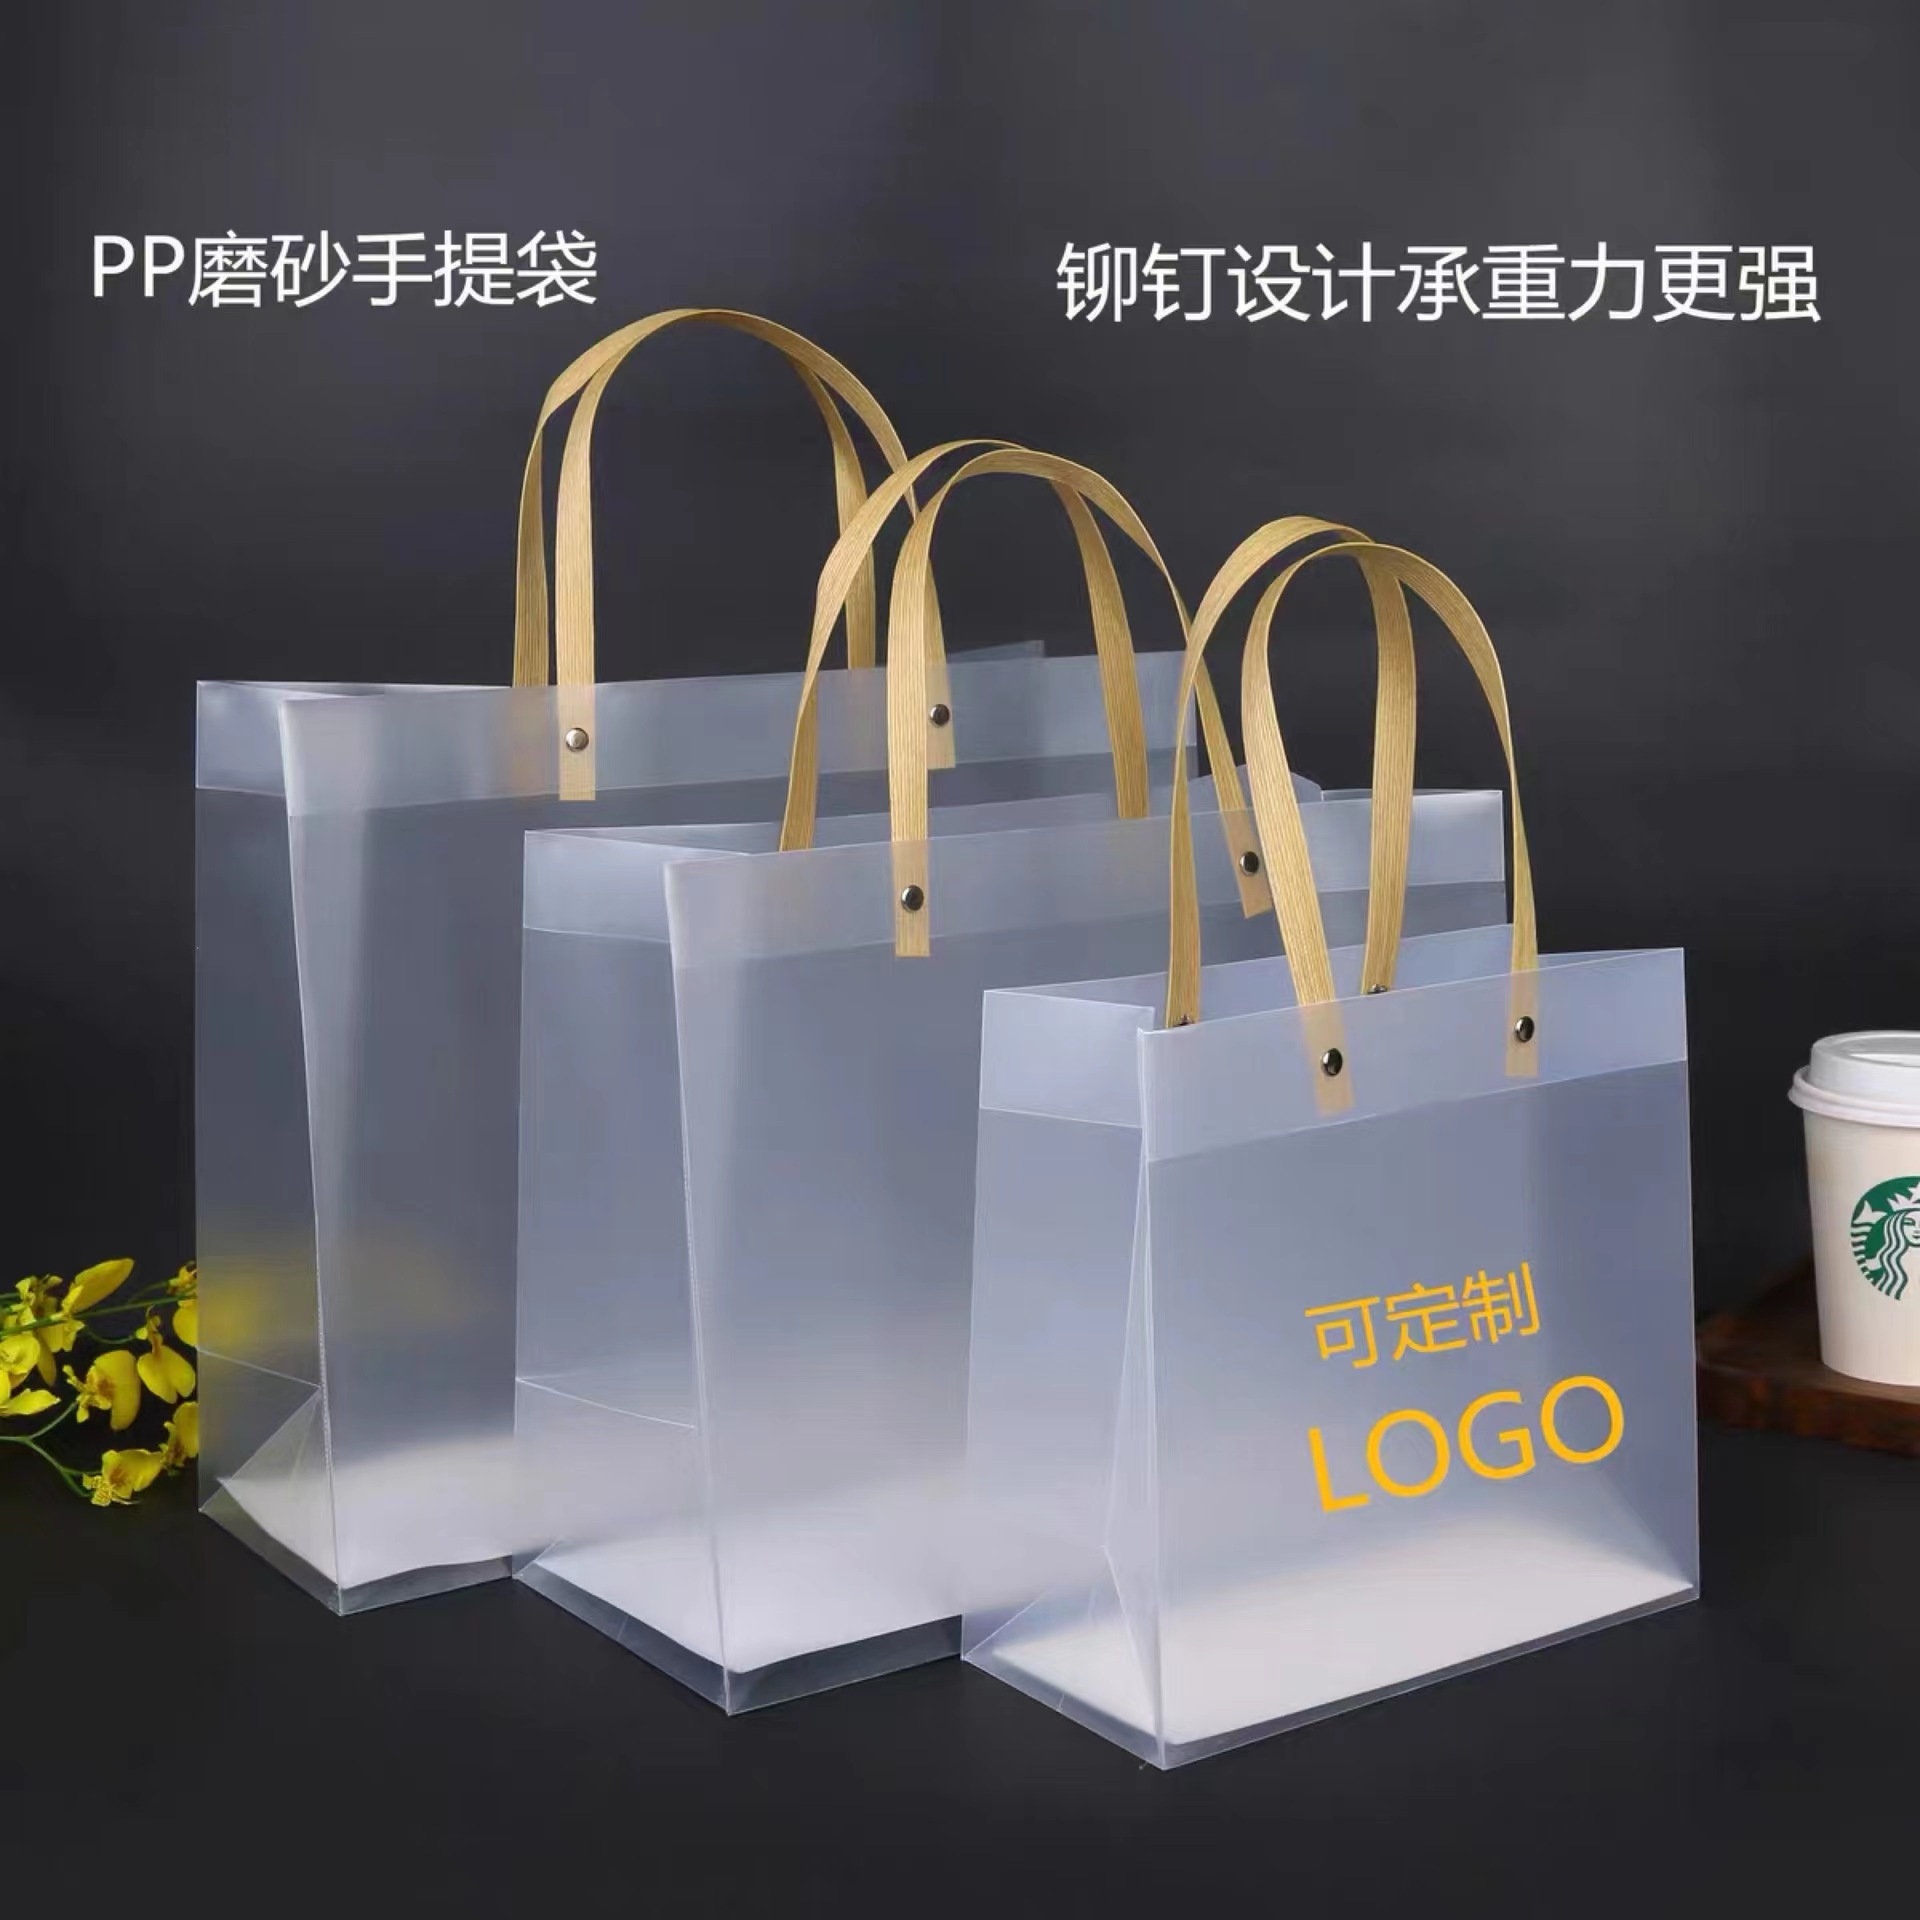 pp磨砂塑料礼品袋/pp磨砂塑料礼品袋/蛋糕盒/礼盒产品图